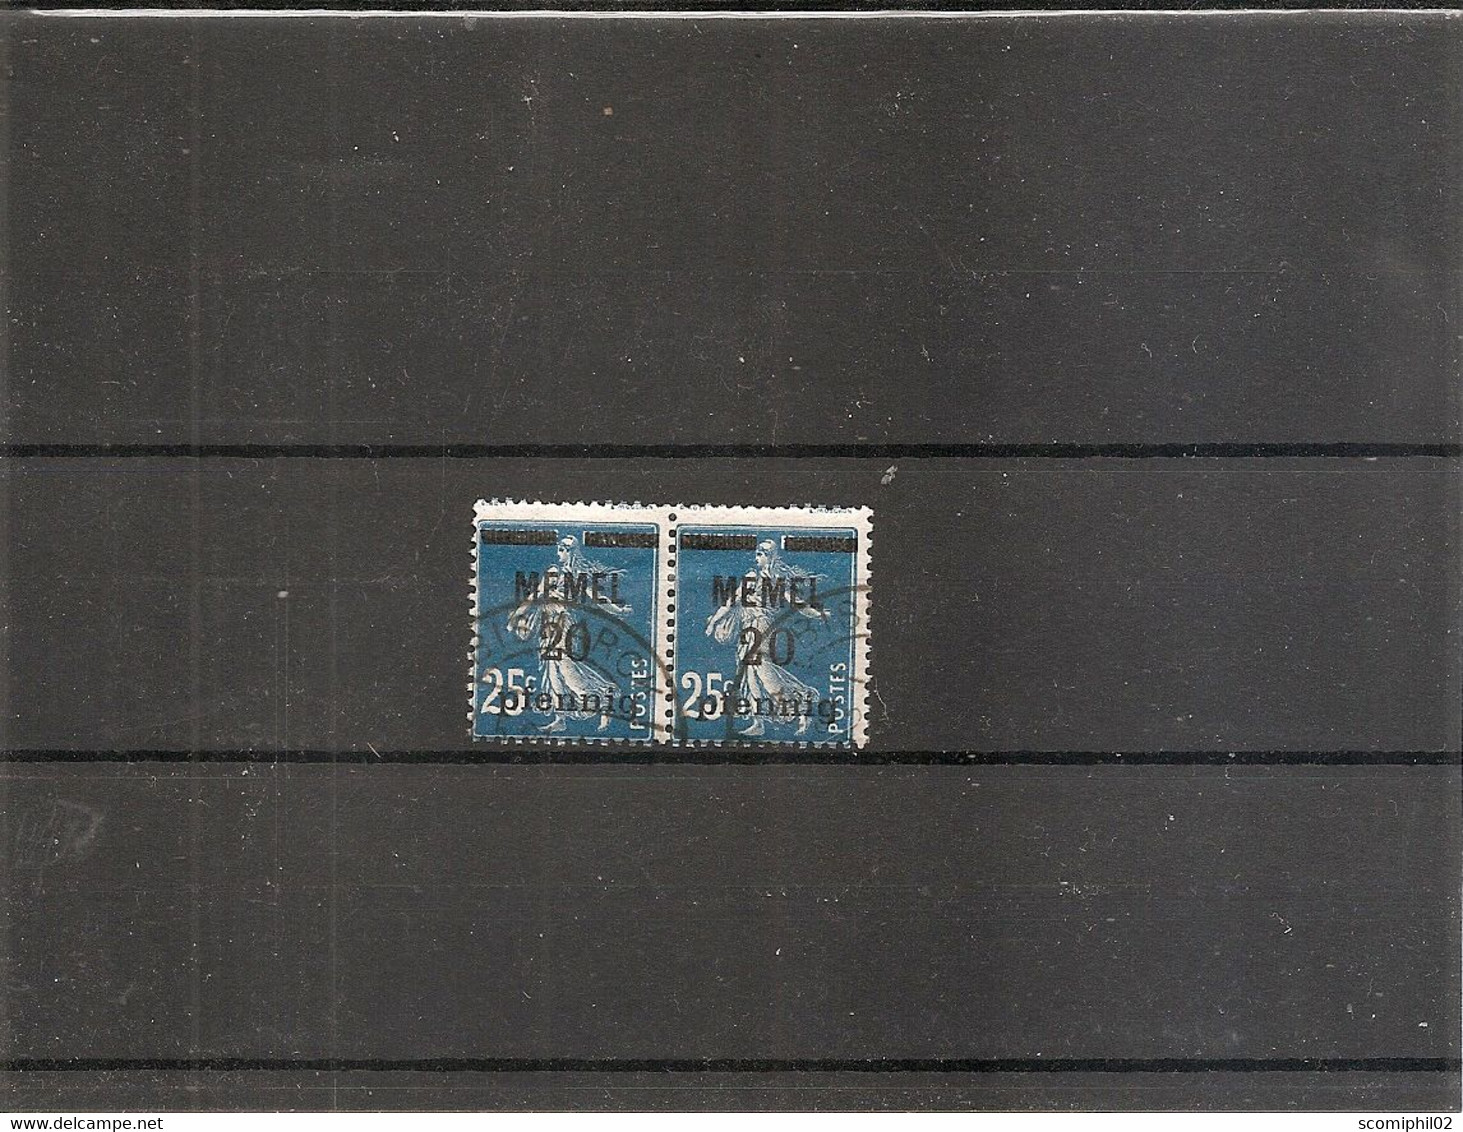 Mémel ( 20 En Paire Oblitéré - Curiosité: Piquage à Cheval à Voir) - Used Stamps